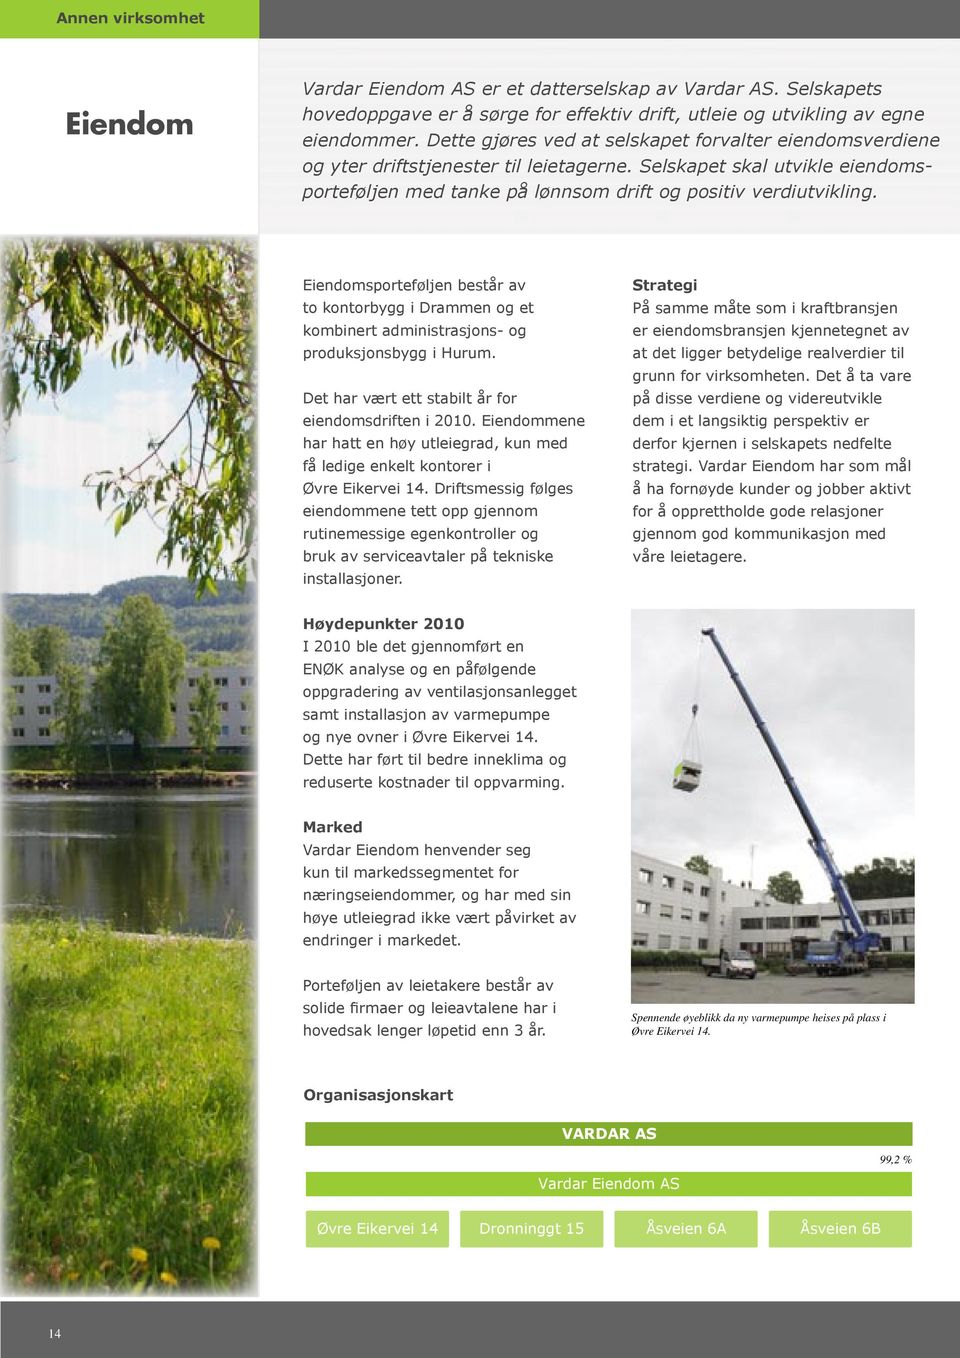 Eiendomsporteføljen består av to kontorbygg i Drammen og et kombinert administrasjons- og produksjonsbygg i Hurum. Det har vært ett stabilt år for eiendomsdriften i 2010.